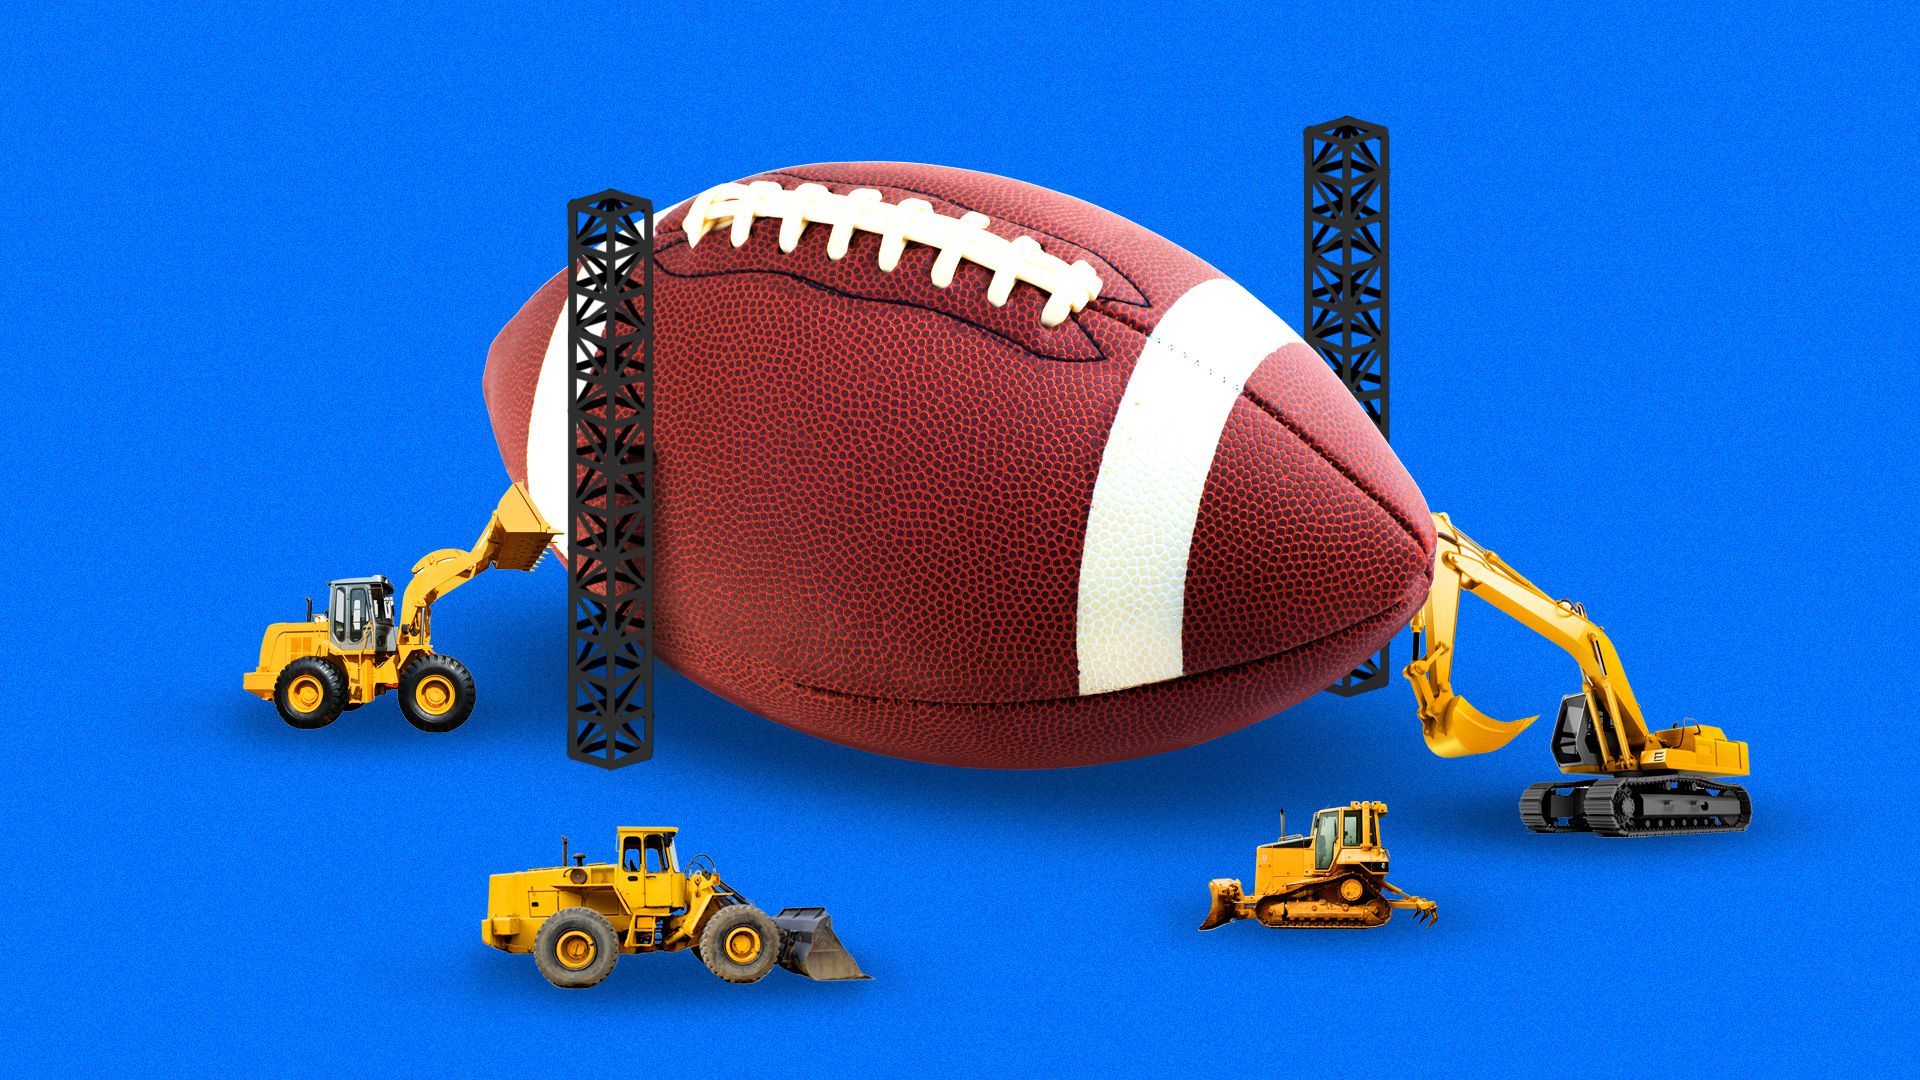 Illustration of a football under construction